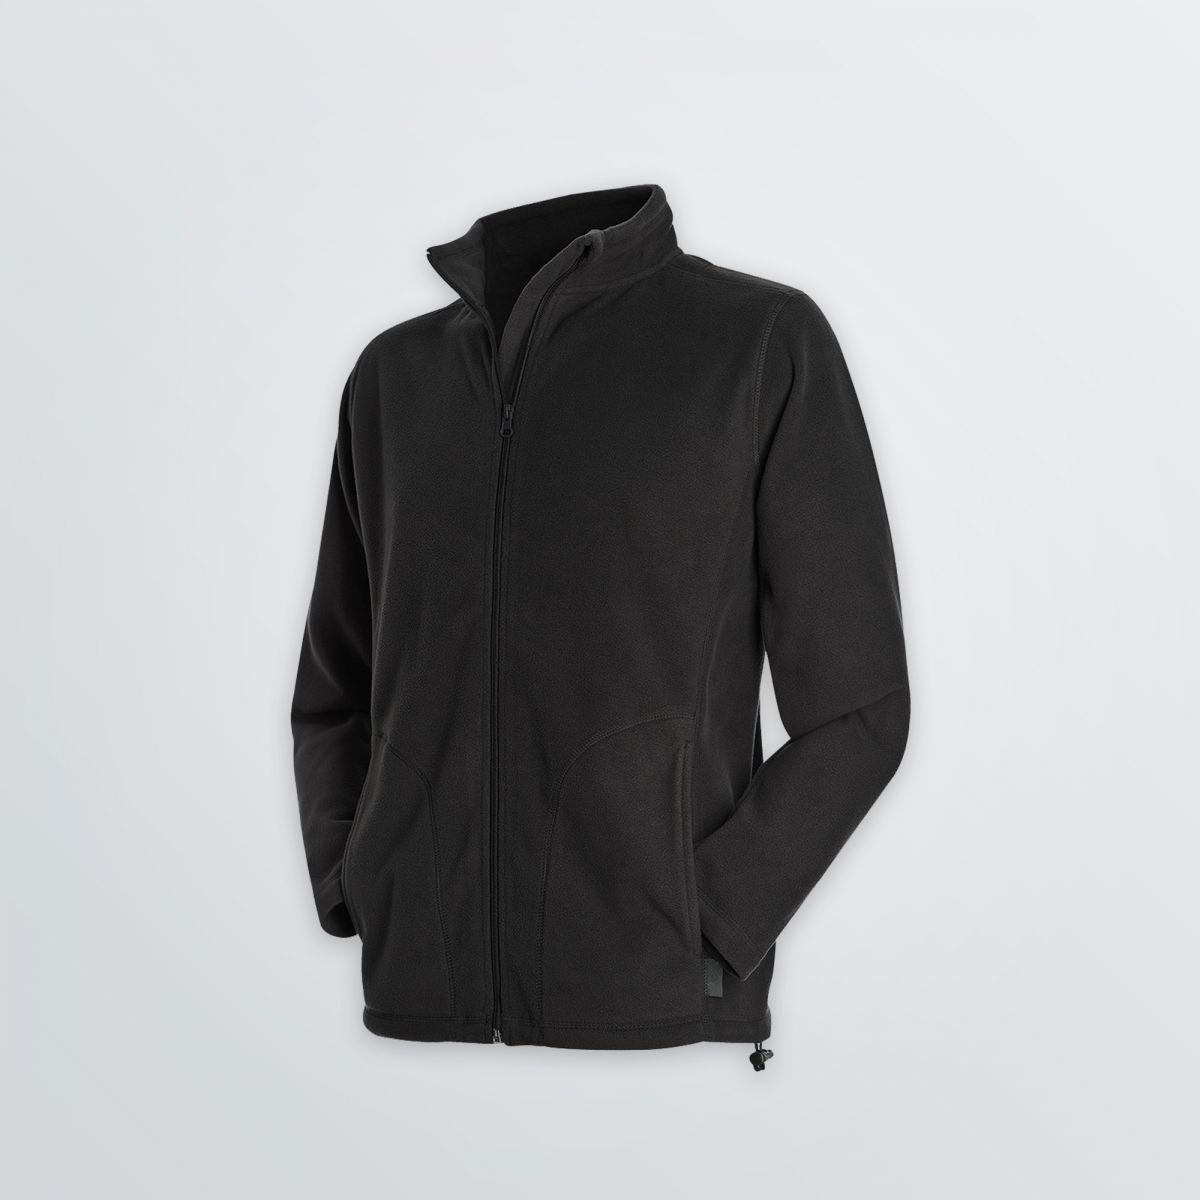 Leichte Basic Fleece Jacket zum Individualisieren als Produktbeispiel in schwarzer Farbe - Seitenansicht